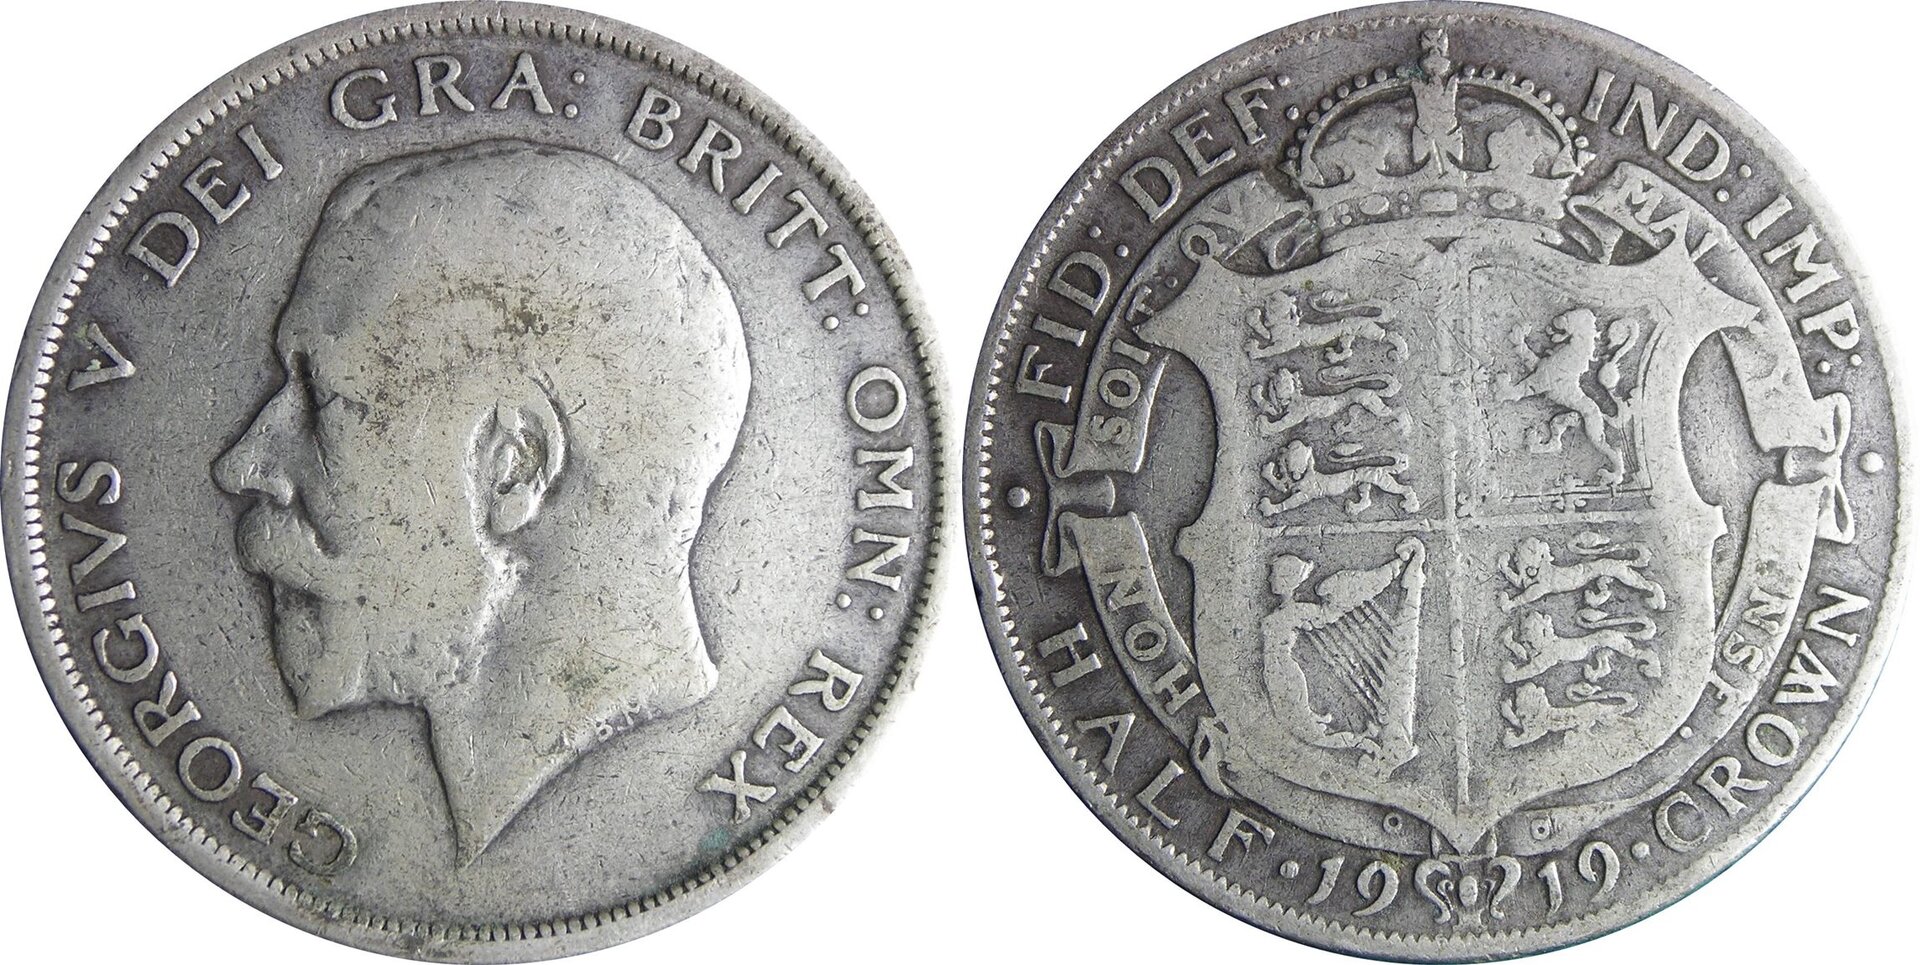 1919 GB 1-2 crown.jpg